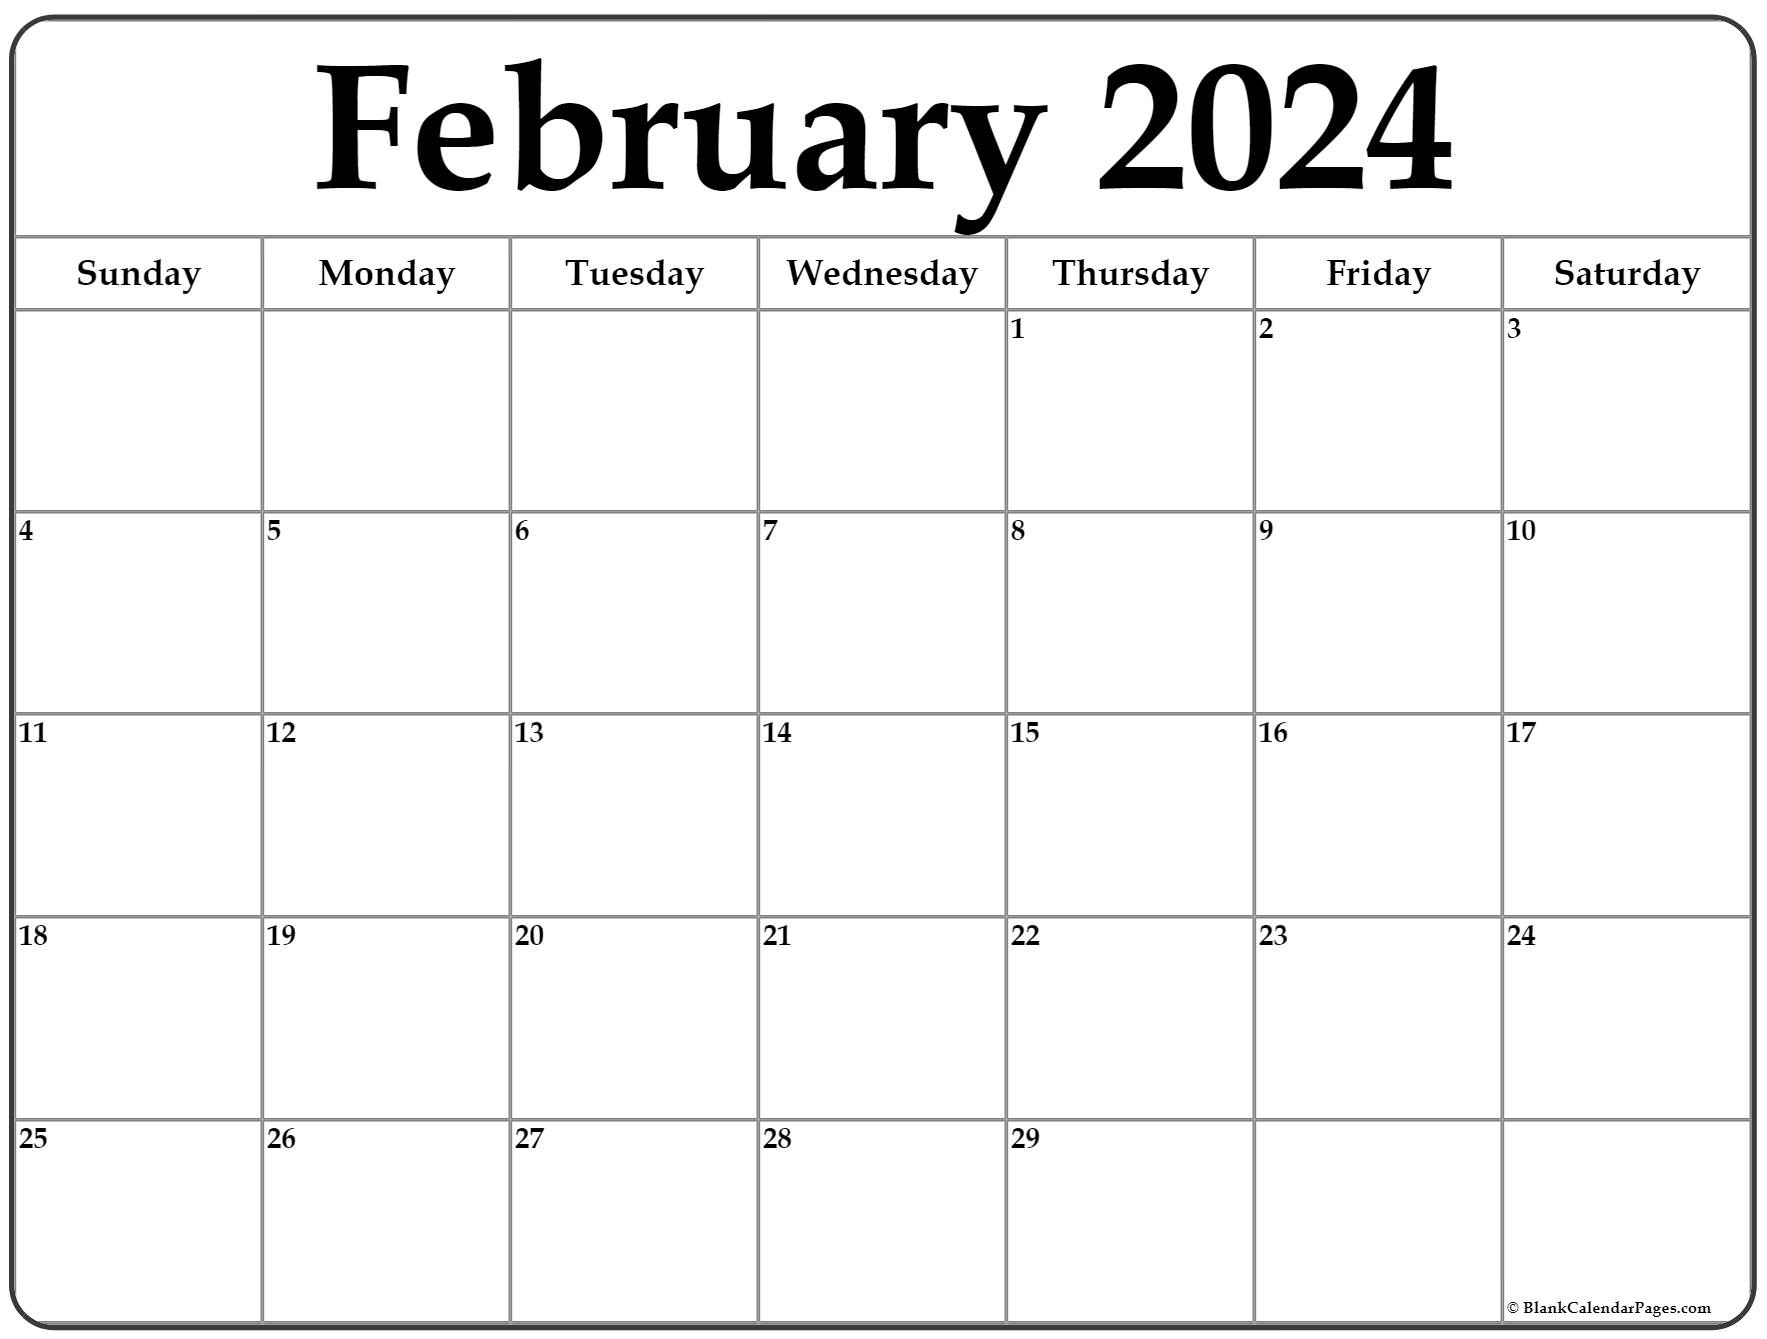 February 2024 Calendar | Free Printable Calendar intended for Free Printable Calendar 20241